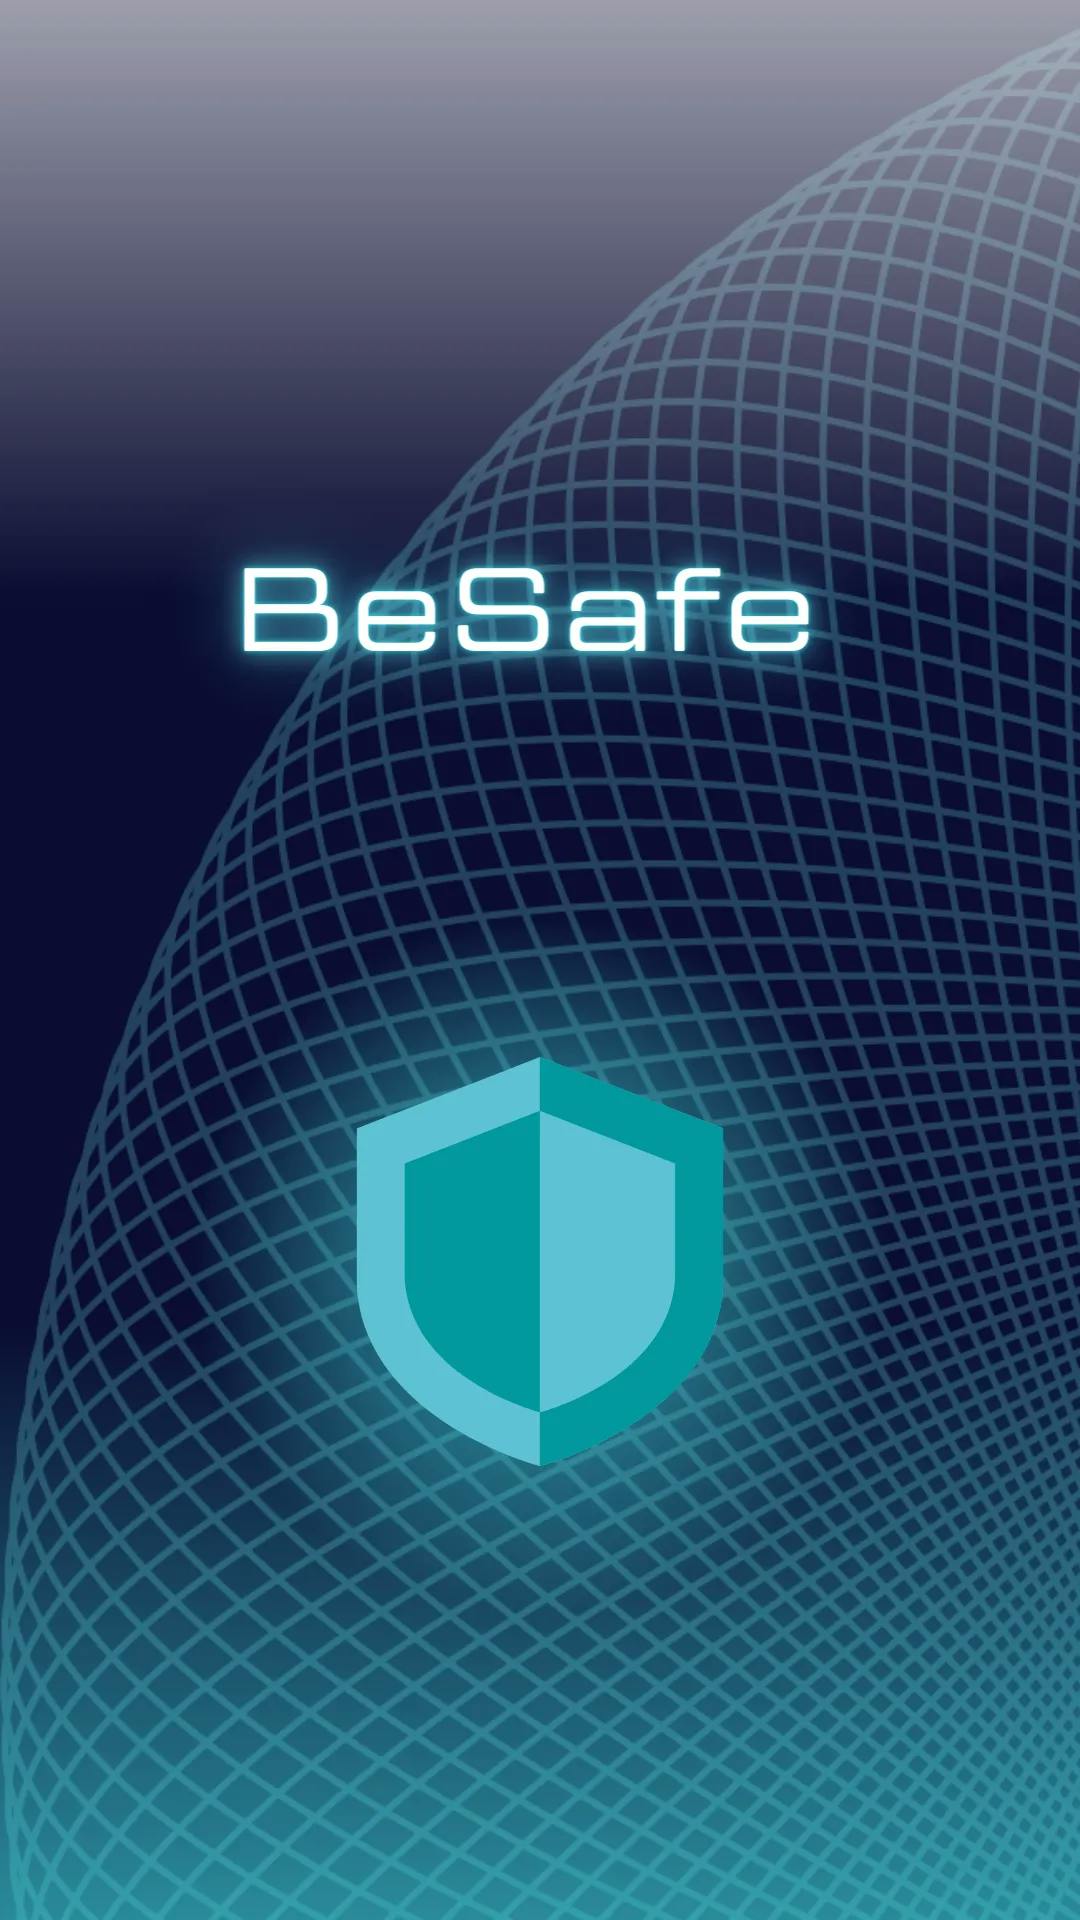 снимка 5 от проект BeSafe